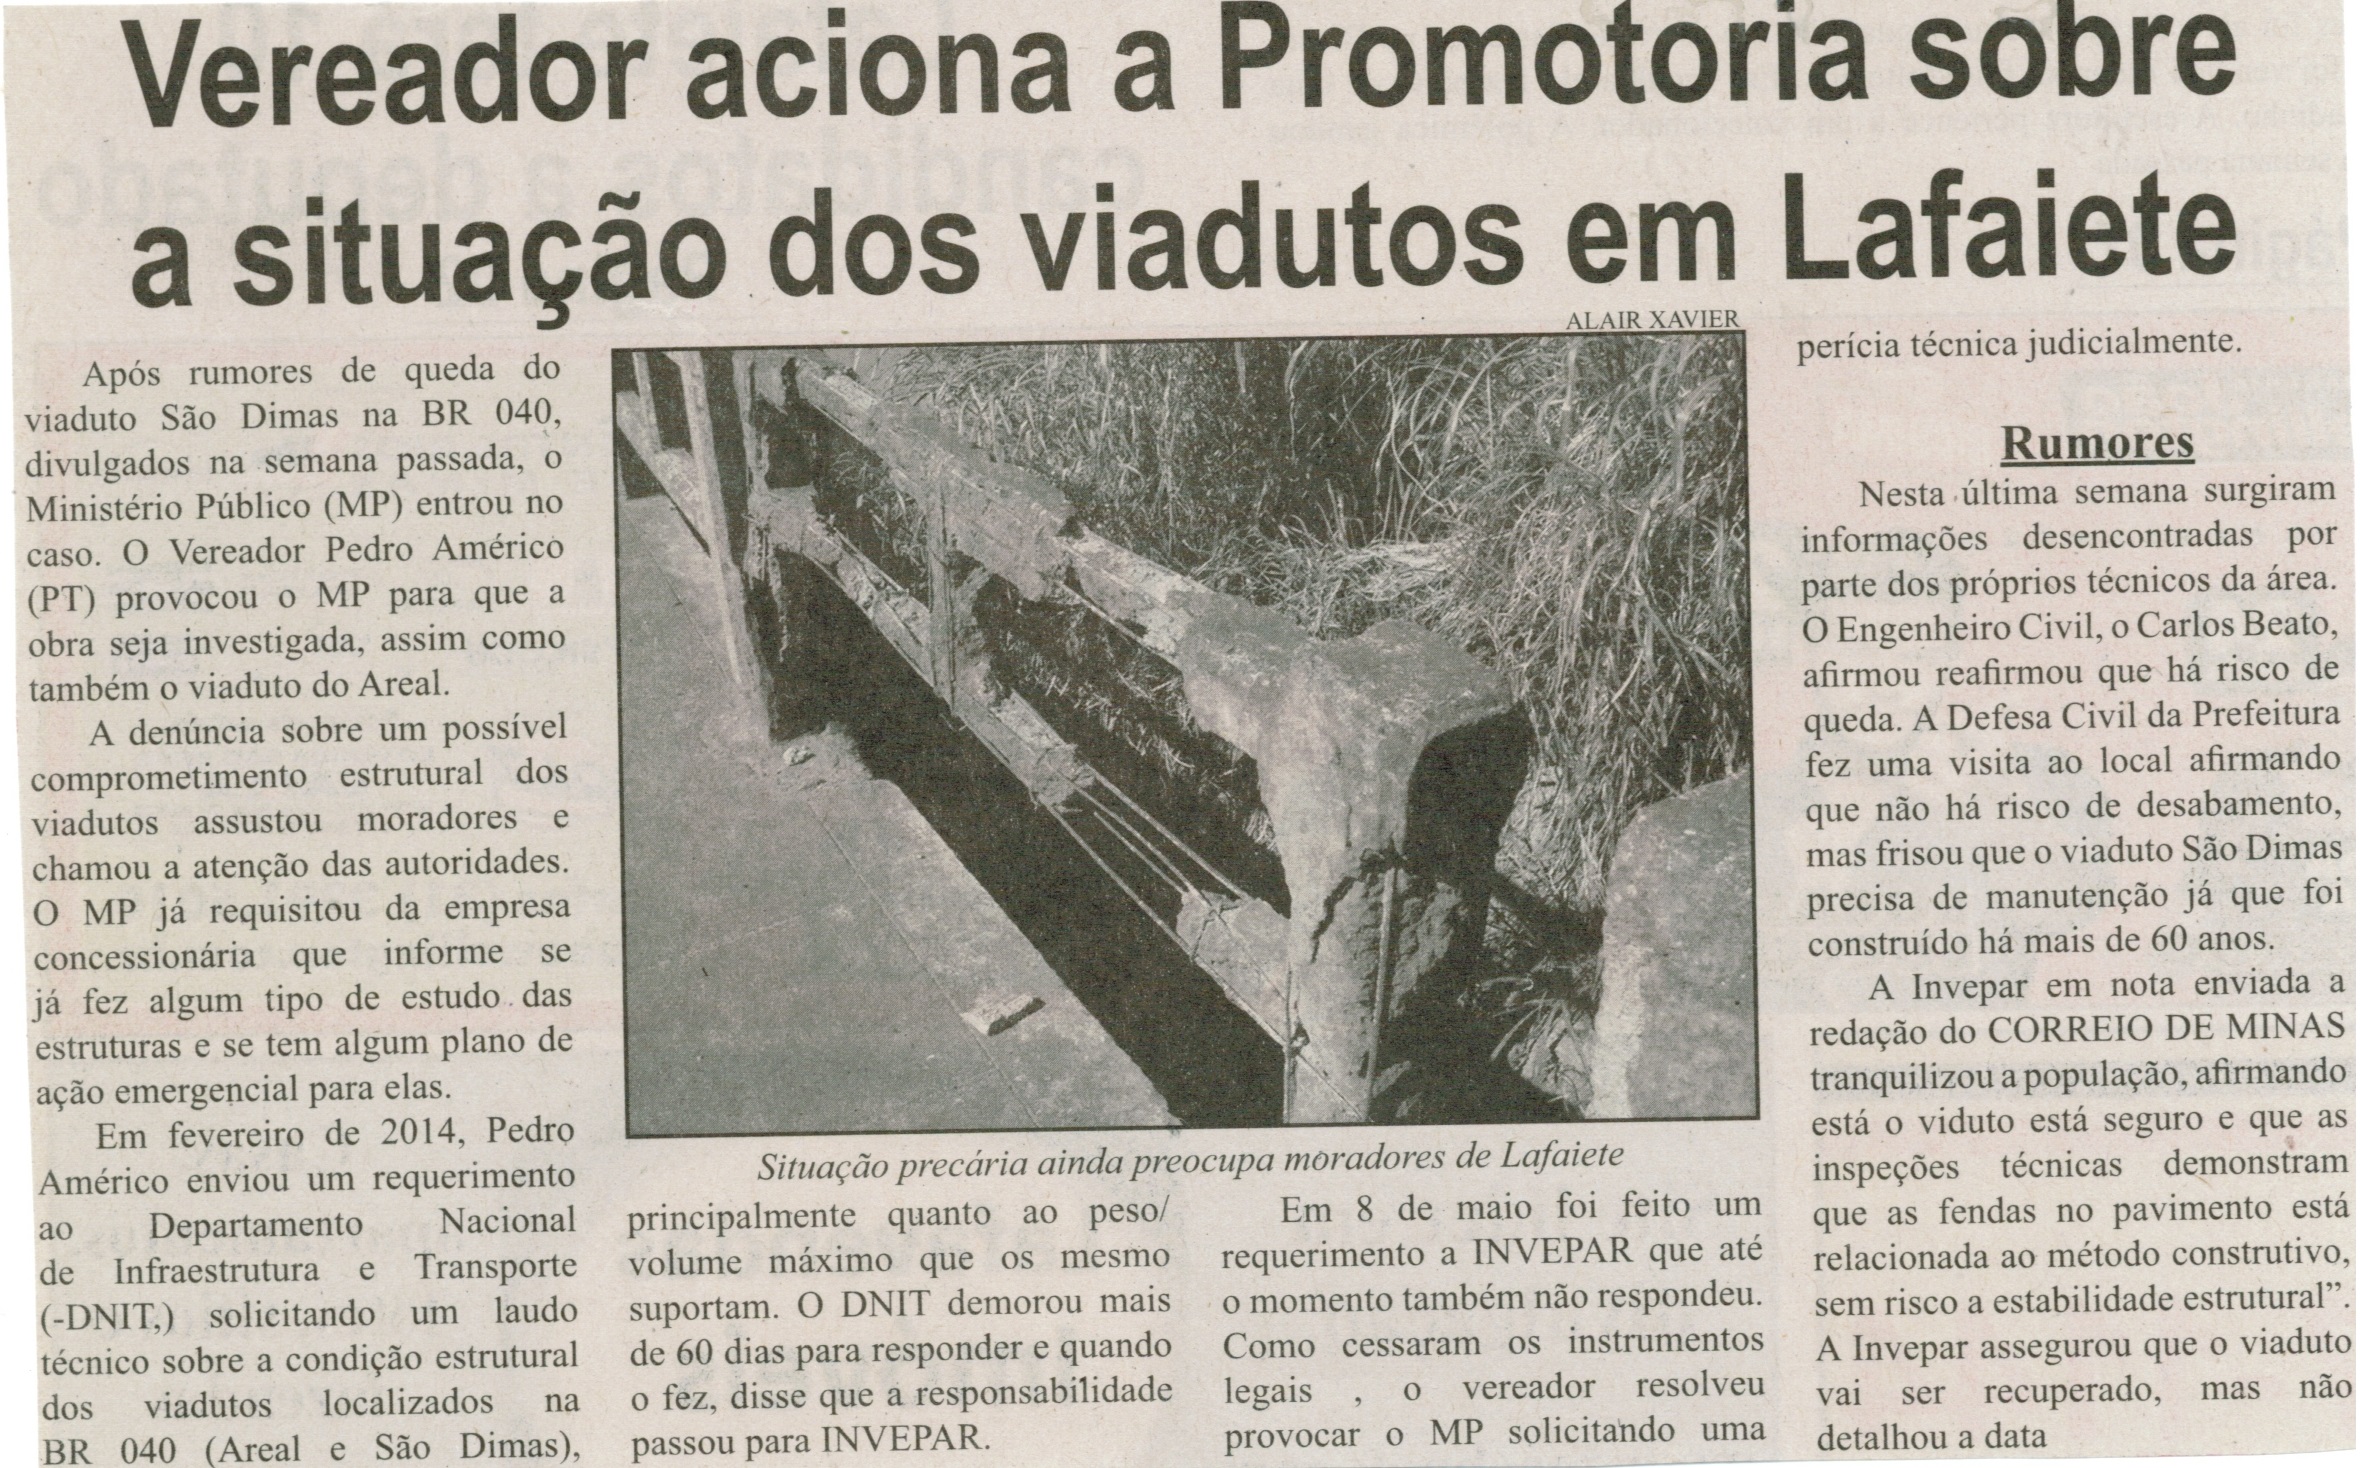 Vereador aciona a Promotoria sobre a situação dos viadutos em Lafaiete. Correio de Minas, Conselheiro Lafaiete, 19 jul. 2014, p. 2.